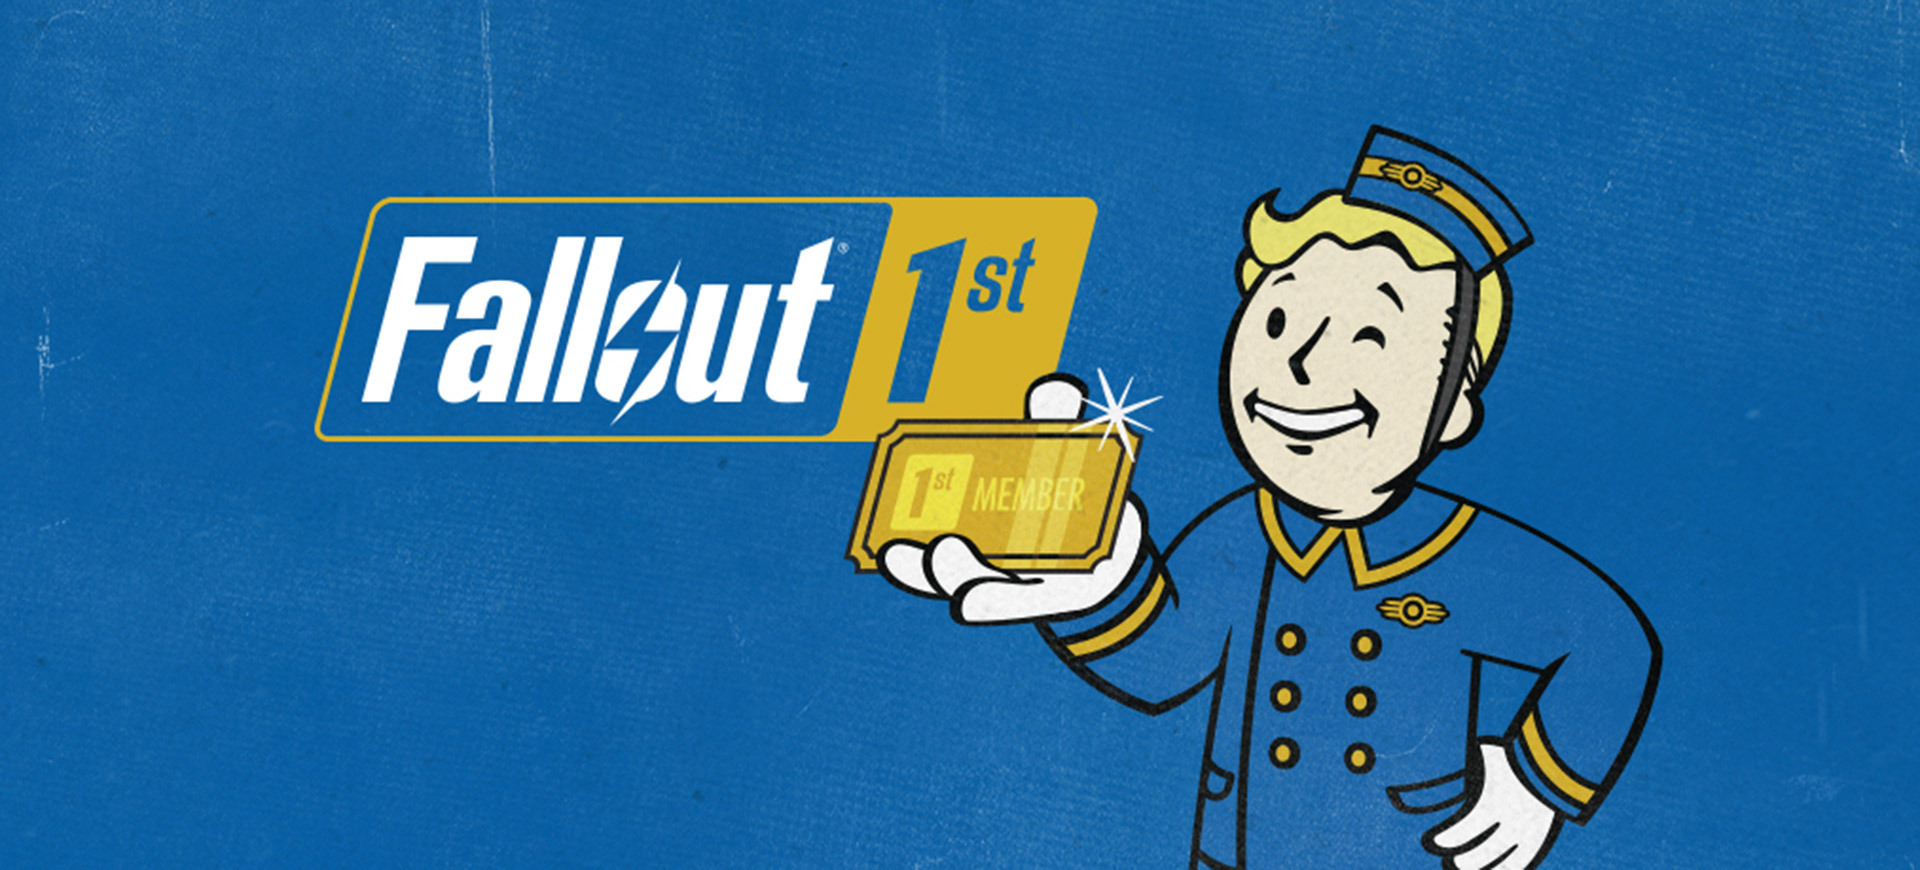 Fallout 76 に Fallout 1st 特典のプライベートワールドやスクラップボックスなどが登場